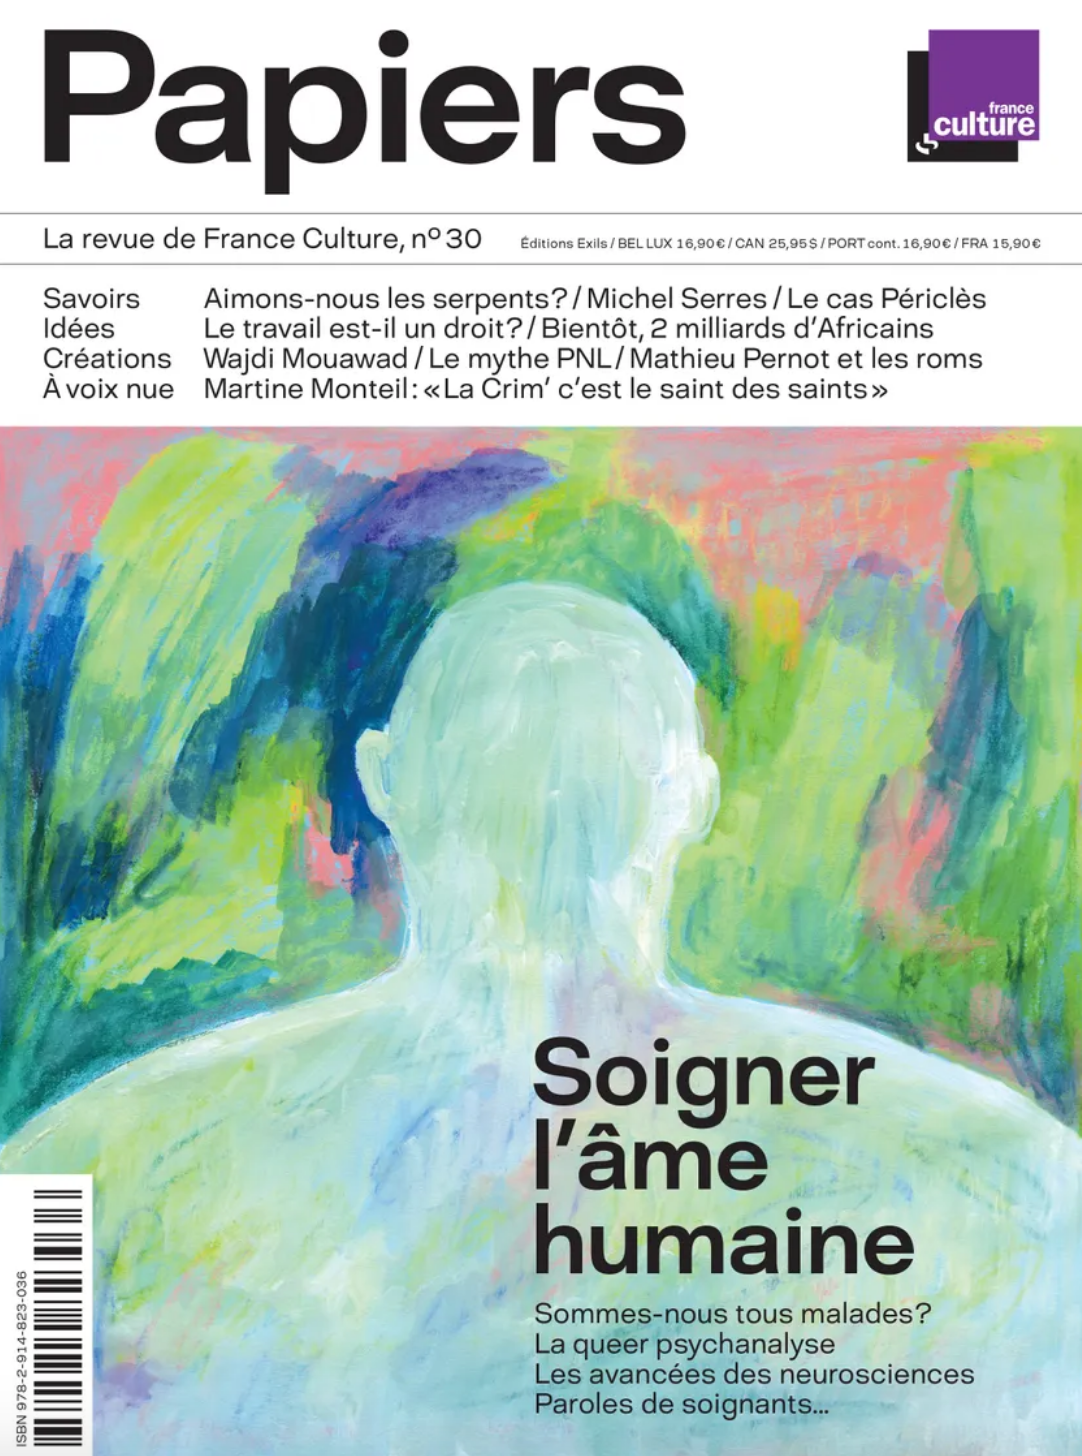 Le magazine "Papiers" de France Culture est disponible